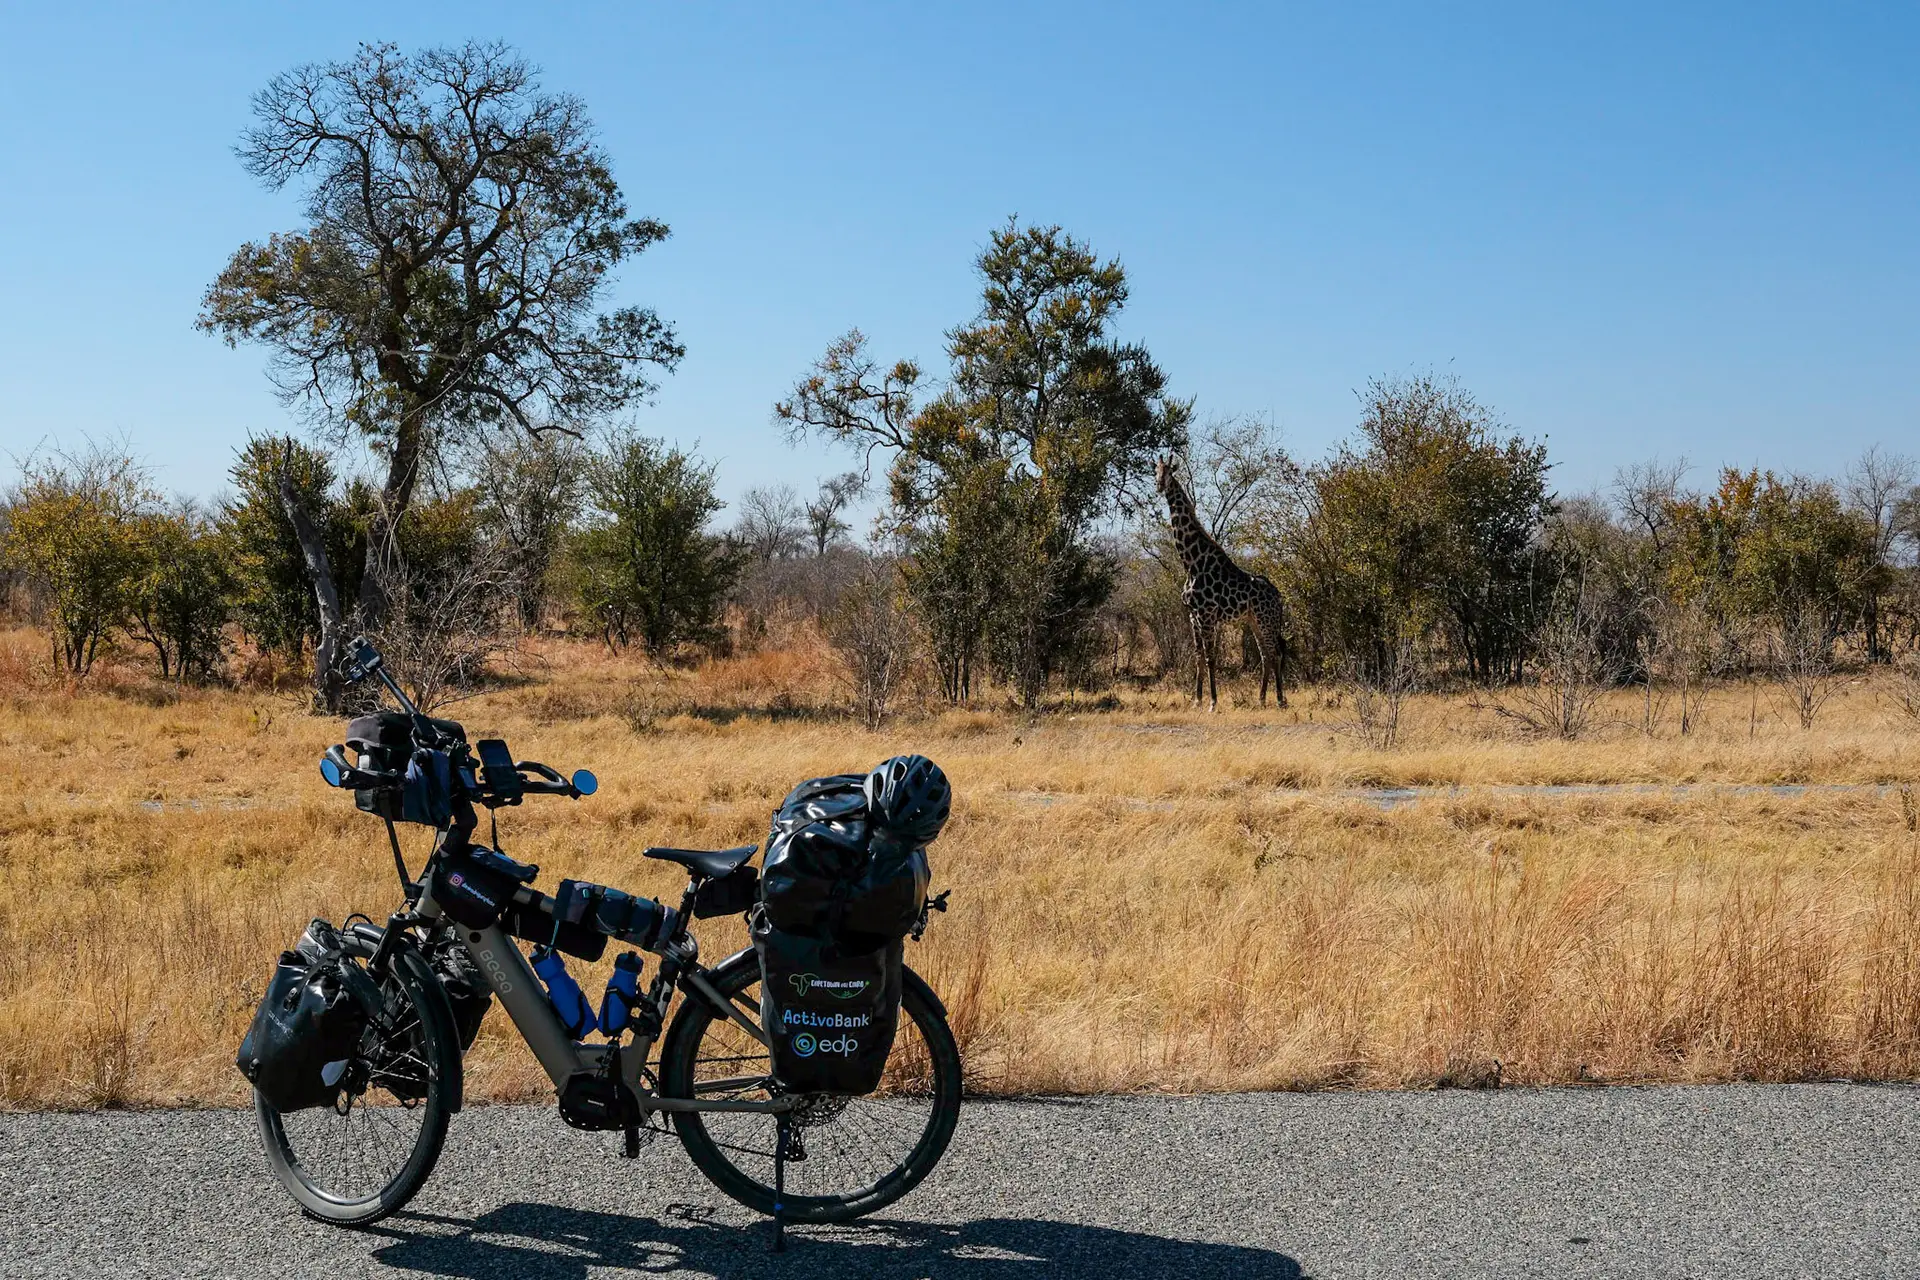 Um Botswana distante do que tinha imaginado, valeu-me a companhia de elefantes, girafas e antílopes